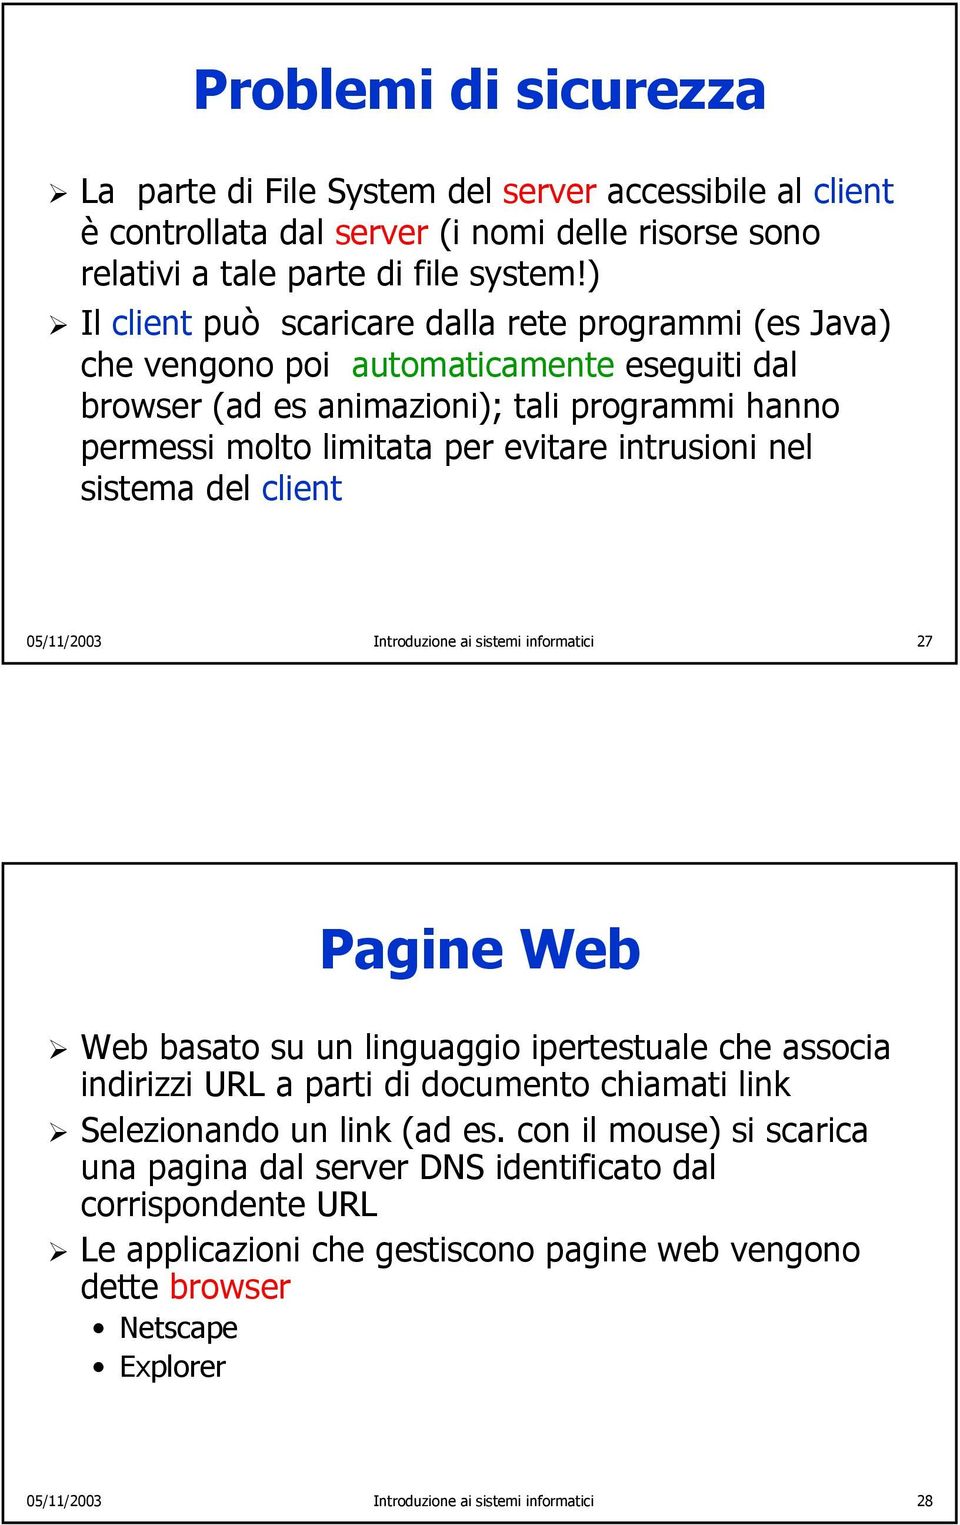 nel sistema del client 05/11/2003 Introduzione ai sistemi informatici 27 Pagine Web Web basato su un linguaggio ipertestuale che associa indirizzi URL a parti di documento chiamati link Selezionando